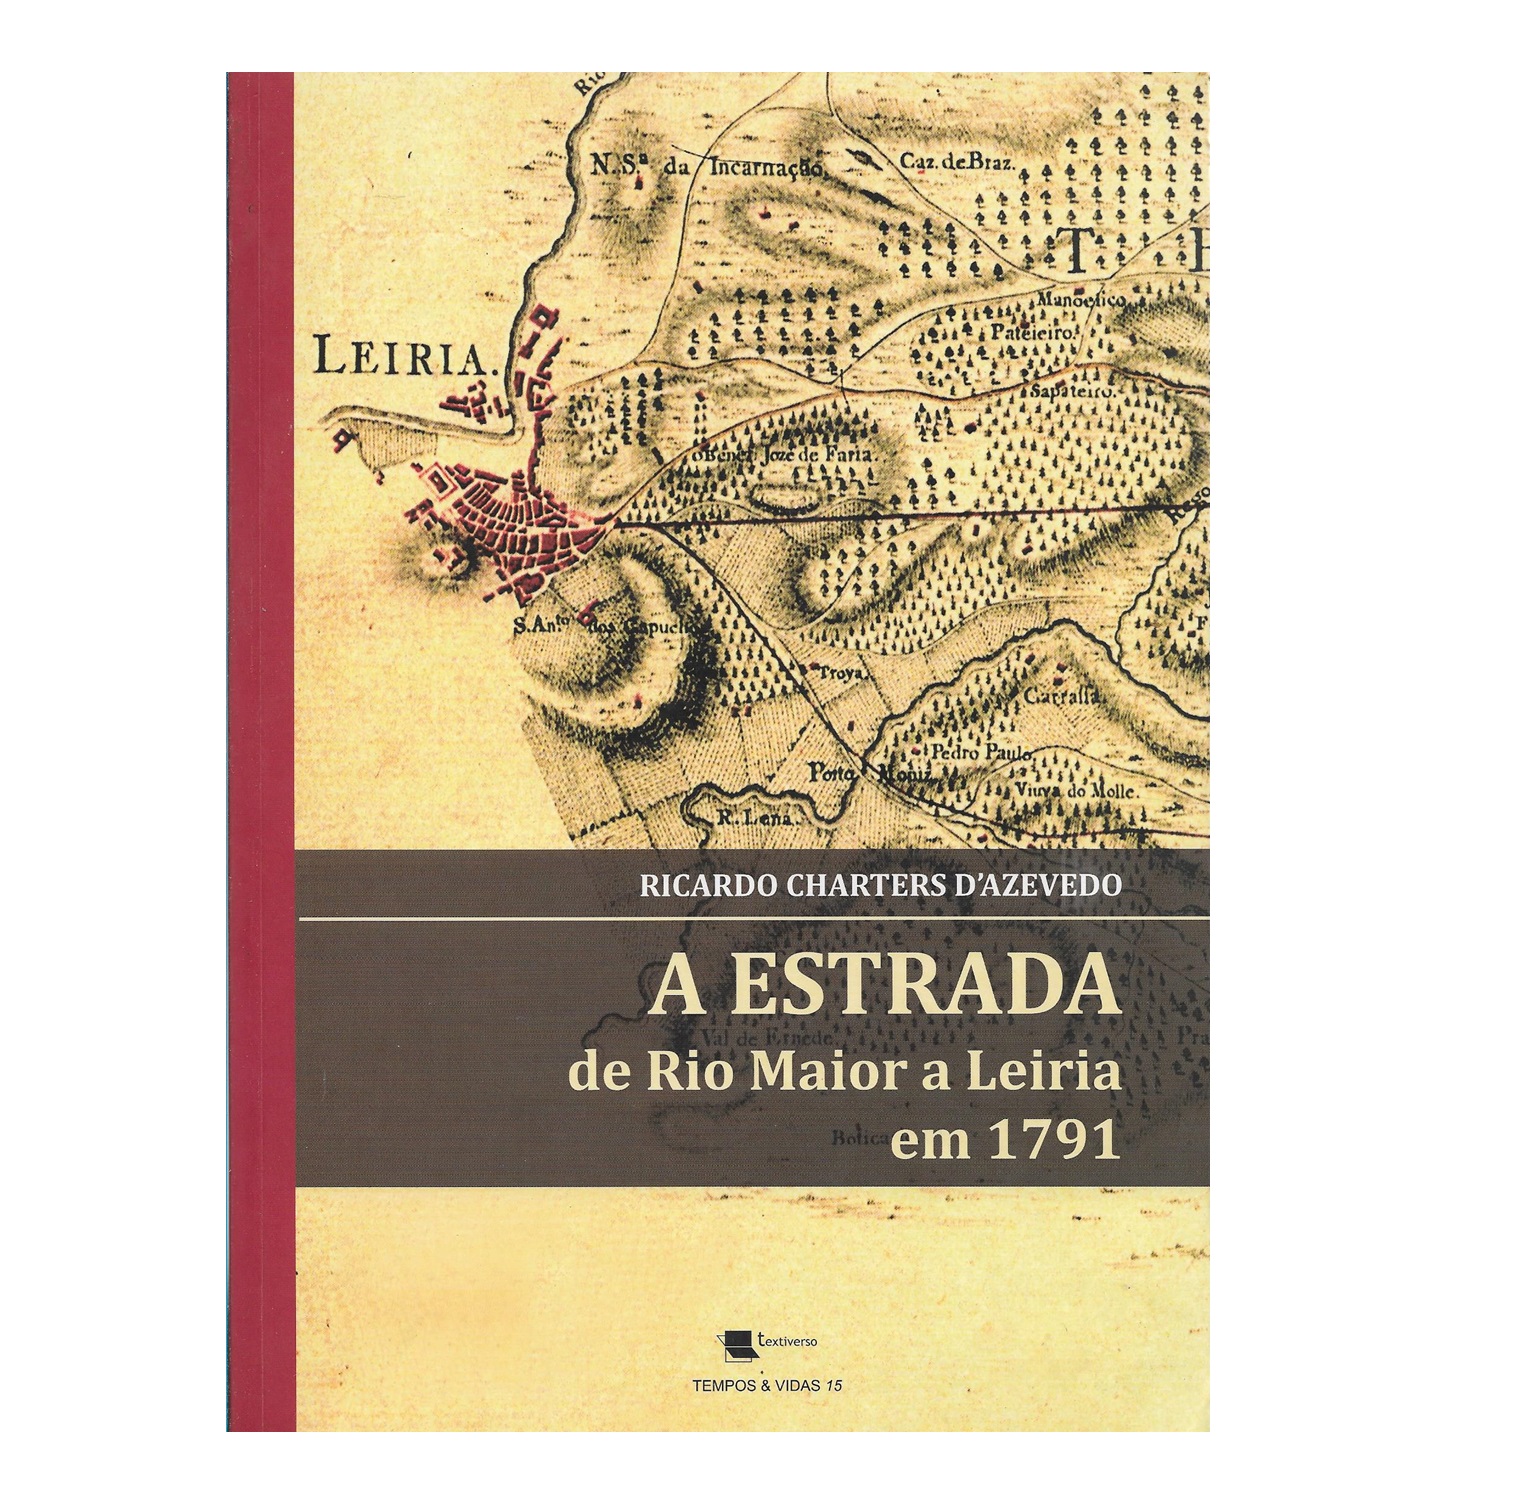  A ESTRADA DE RIO MAIOR A LEIRIA EM 1791